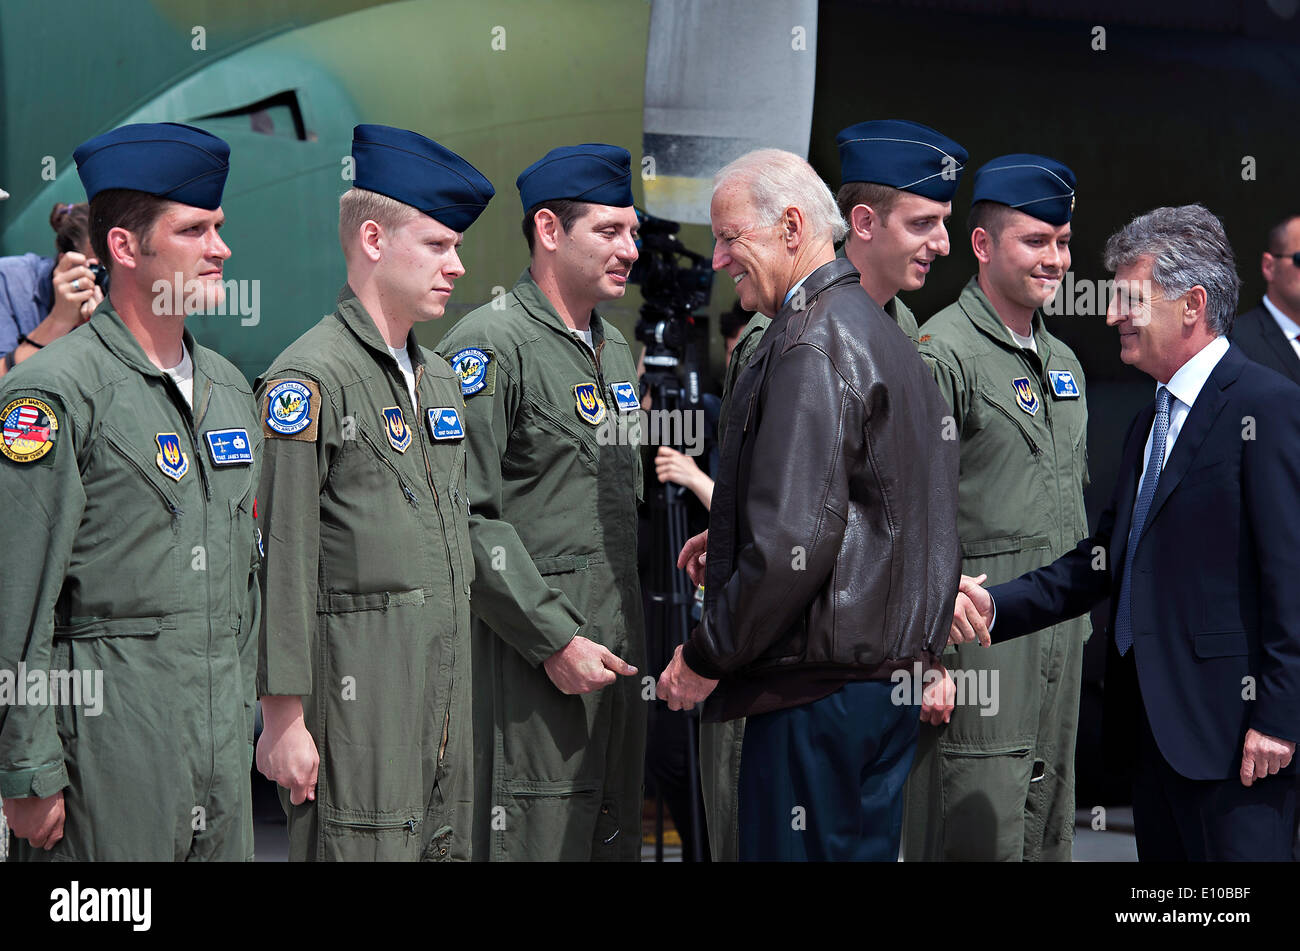 Le Vice-président américain Joe Biden répond aux aviateurs de l'US Air Force avec le 37e Escadron de transport aérien et le 86e Escadron de maintenance des aéronefs, 20 mai 2014 à Bucarest, Roumanie. Biden est en Roumanie pour rassurer les alliés de l'engagement des USA dans la région. Banque D'Images